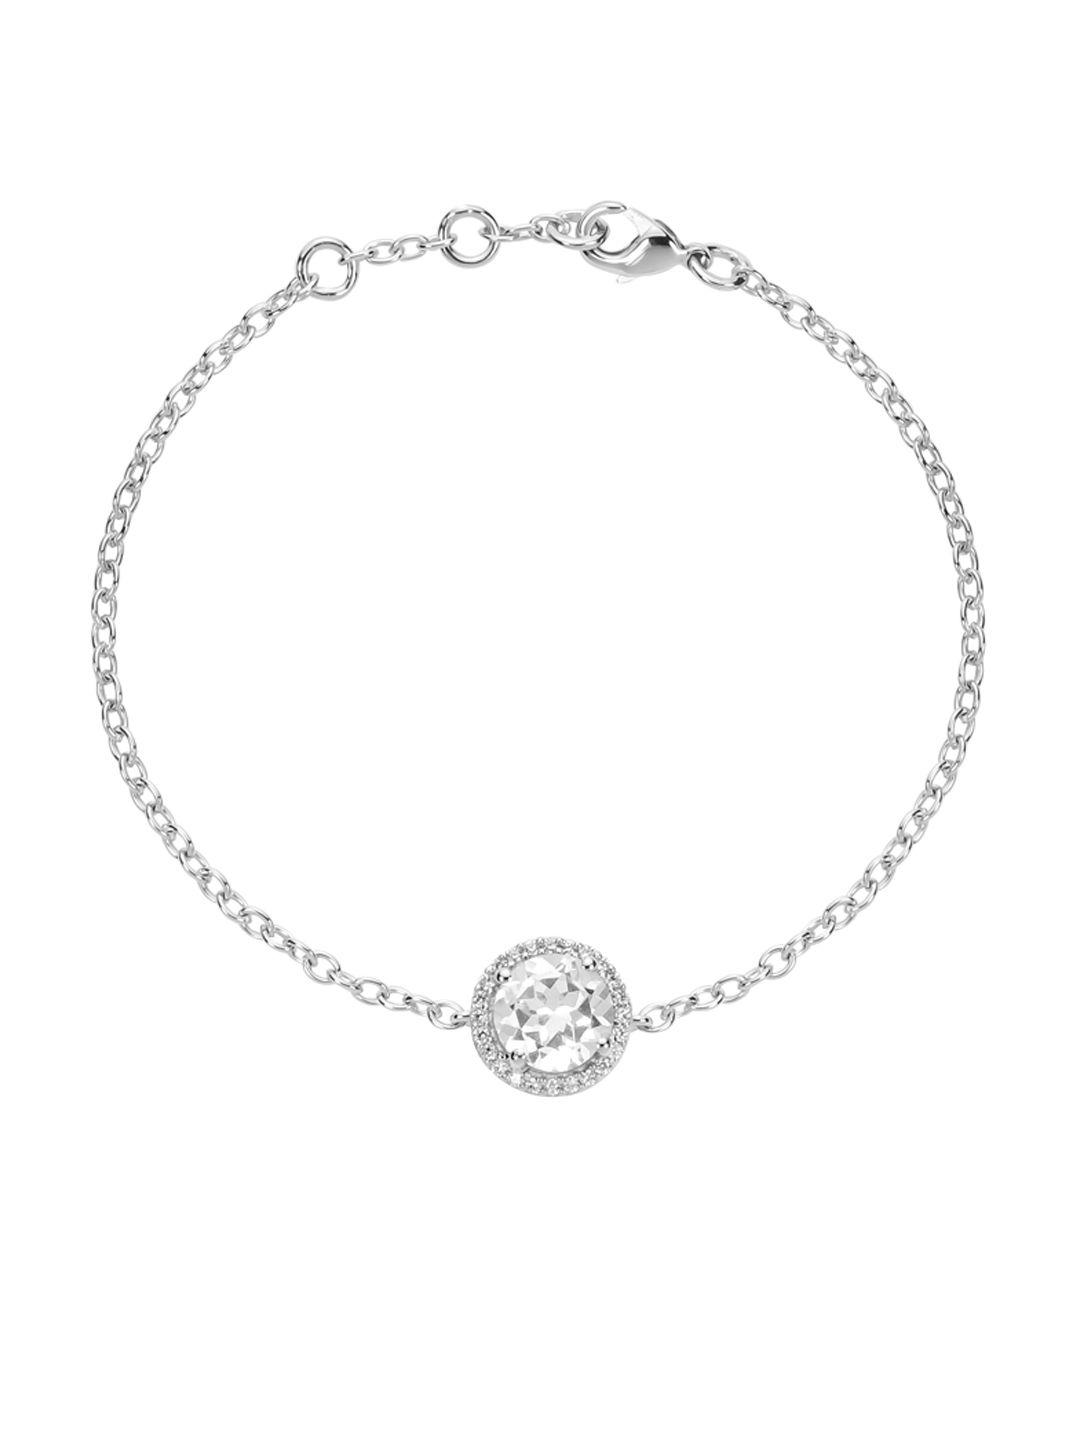 la soula 925 sterling silver sapphire april birthstone bracelet rakhi